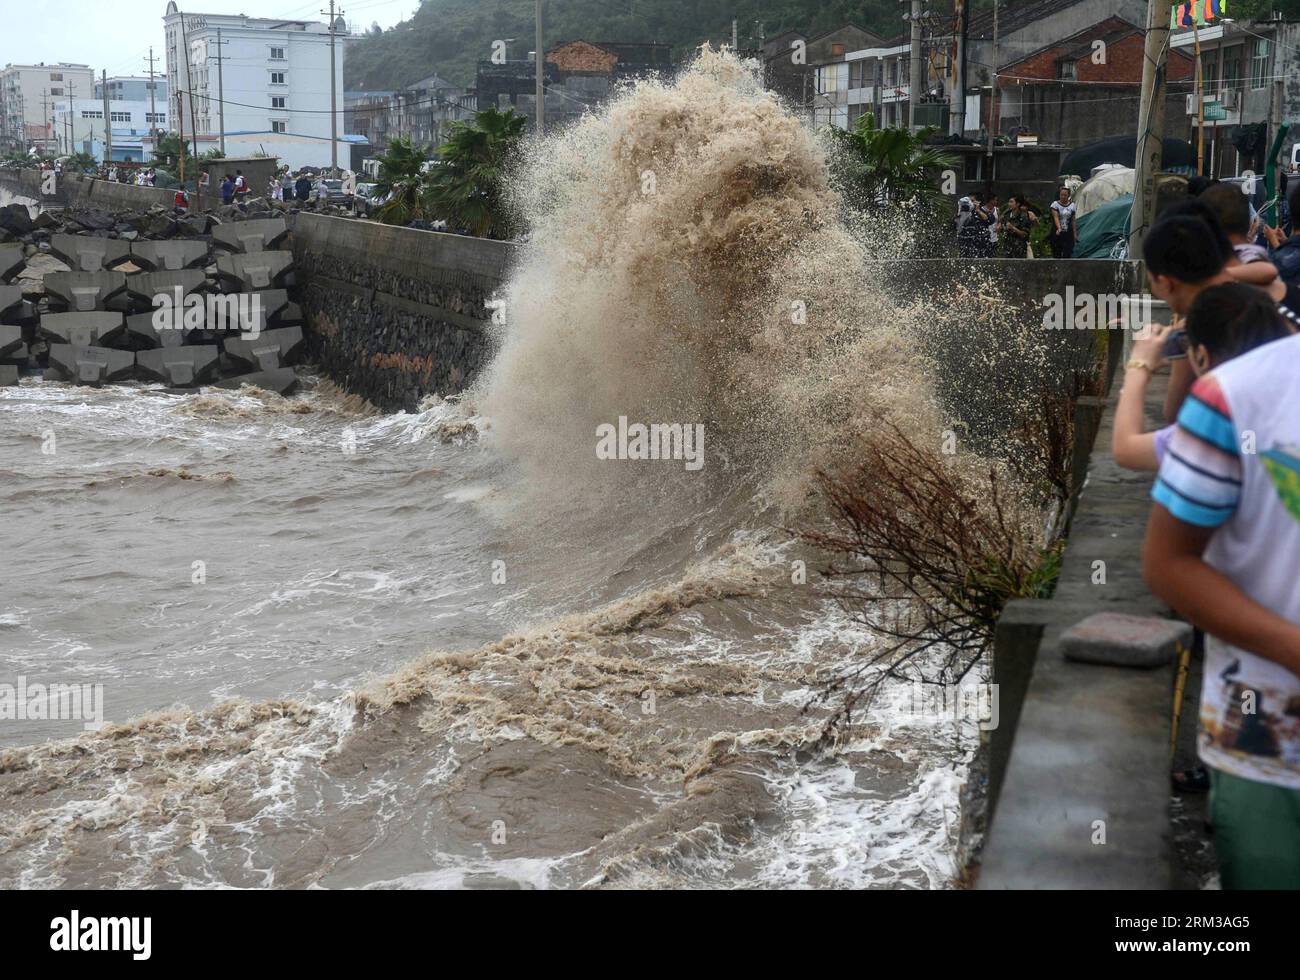 Bildnummer : 60119126 Datum : 13.07.2013 Copyright : imago/Xinhua (130713) -- CANGNAN, 13 juillet 2013 (Xinhua) -- de grandes vagues ont frappé une digue maritime dans le comté de Cangnan, province du Zhejiang, dans l'est de la Chine, le 13 juillet 2013. Le typhon Soulik devrait toucher terre dans les provinces du Fujian et du Zhejiang sur le continent chinois entre samedi midi et en fin d'après-midi après avoir passé Taiwan. (Xinhua/Han Chuanhao) (mp) CHINA-ZHEJIANG-TYPHOON SOULIK (CN) PUBLICATIONxNOTxINxCHN Gesellschaft Sturm Meer Wellen xas x0x 2013 quer 60119126 Date 13 07 2013 Copyright Imago XINHUA Cangnan juillet 13 2013 XINHUA Big Waves Hit Banque D'Images